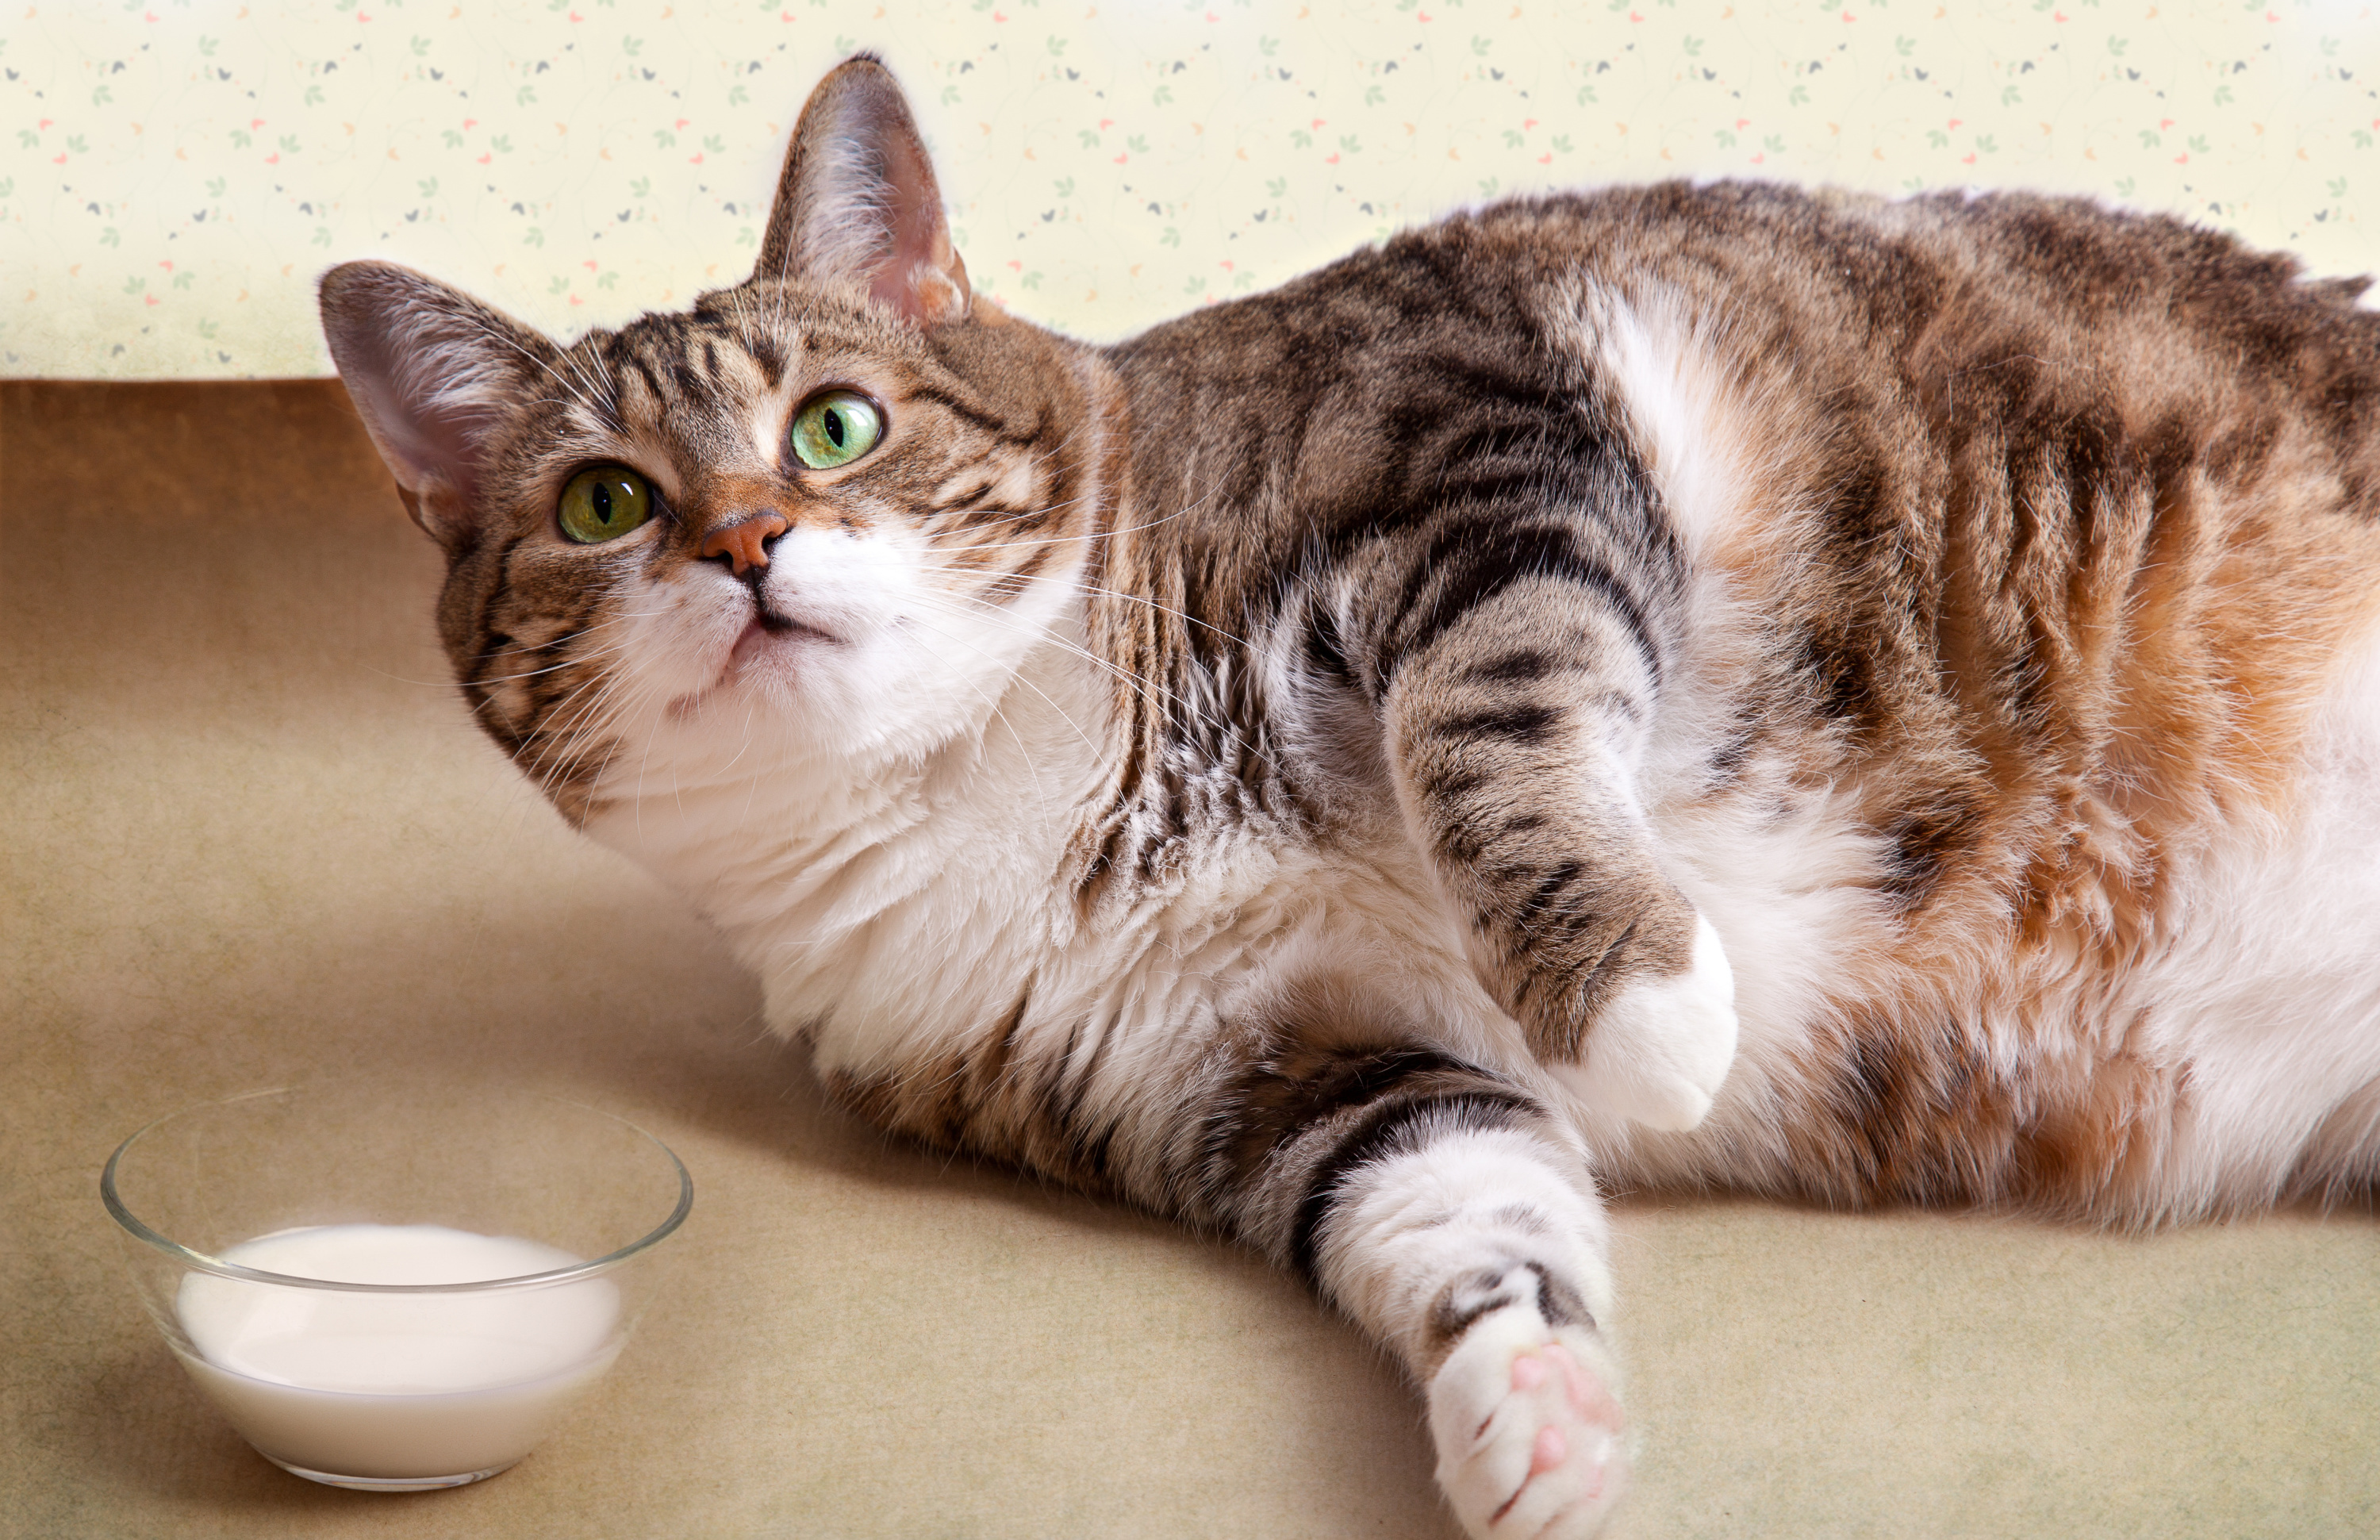 Donner du lait à son chat : une pratique nocive ? - Nos conseils  vétérinaires